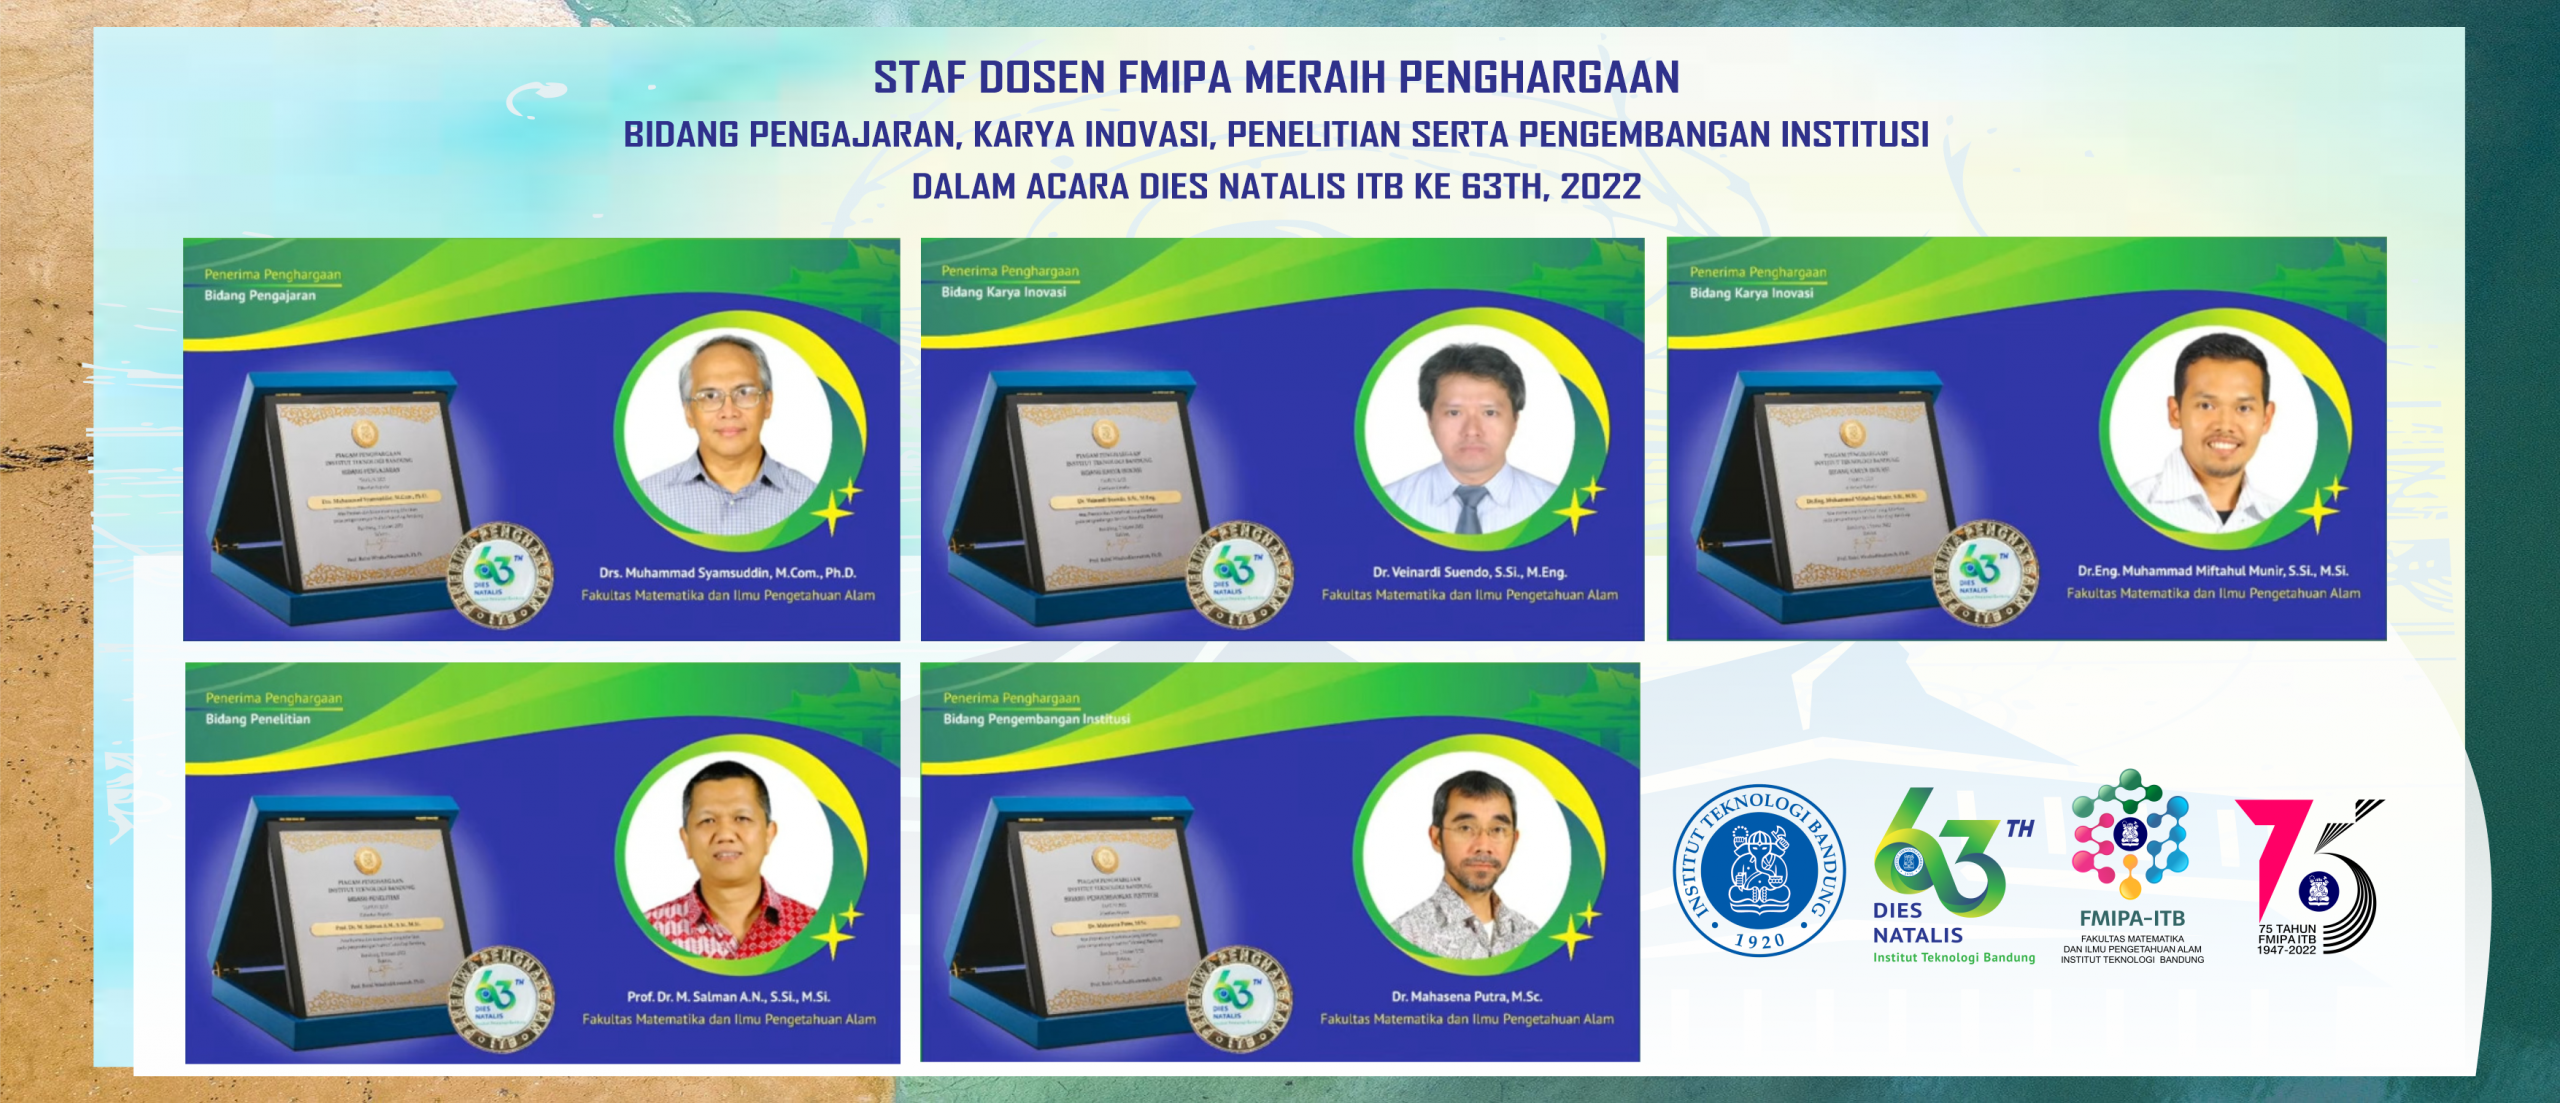 Staf Dosen FMIPA ITB Meraih Penghargaan bidang Pengajaran, Karya Inovasi, Penelitian Serta Pengembangan Institusi dalam Acara Dies Natalis ITB Ke 63, Tahun 2022.